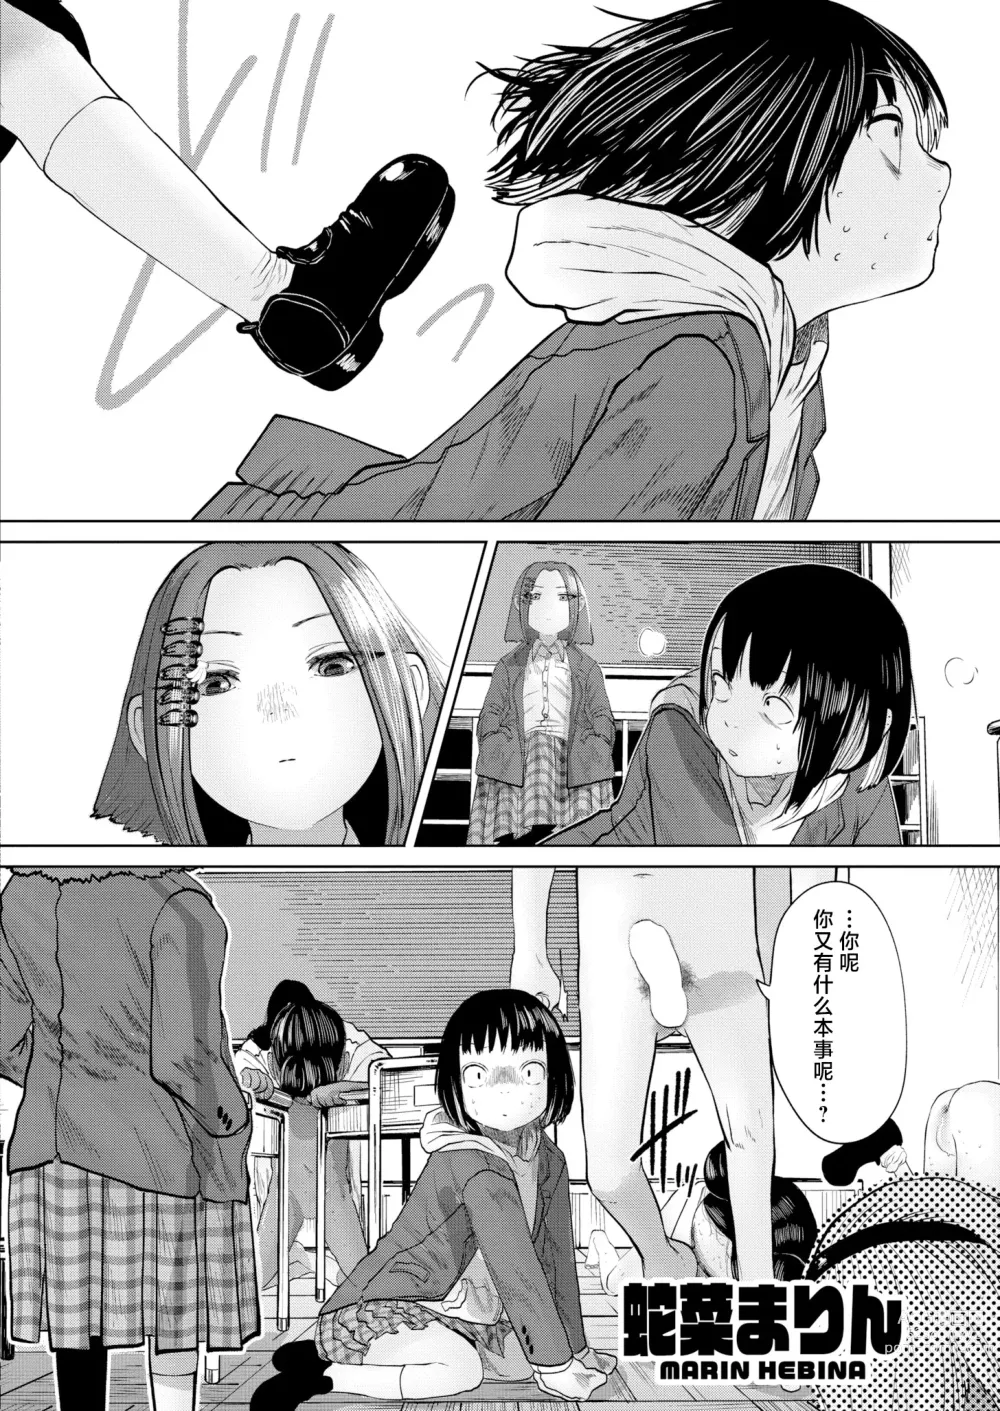 Page 140 of manga ねーうしとらうー! #1-5